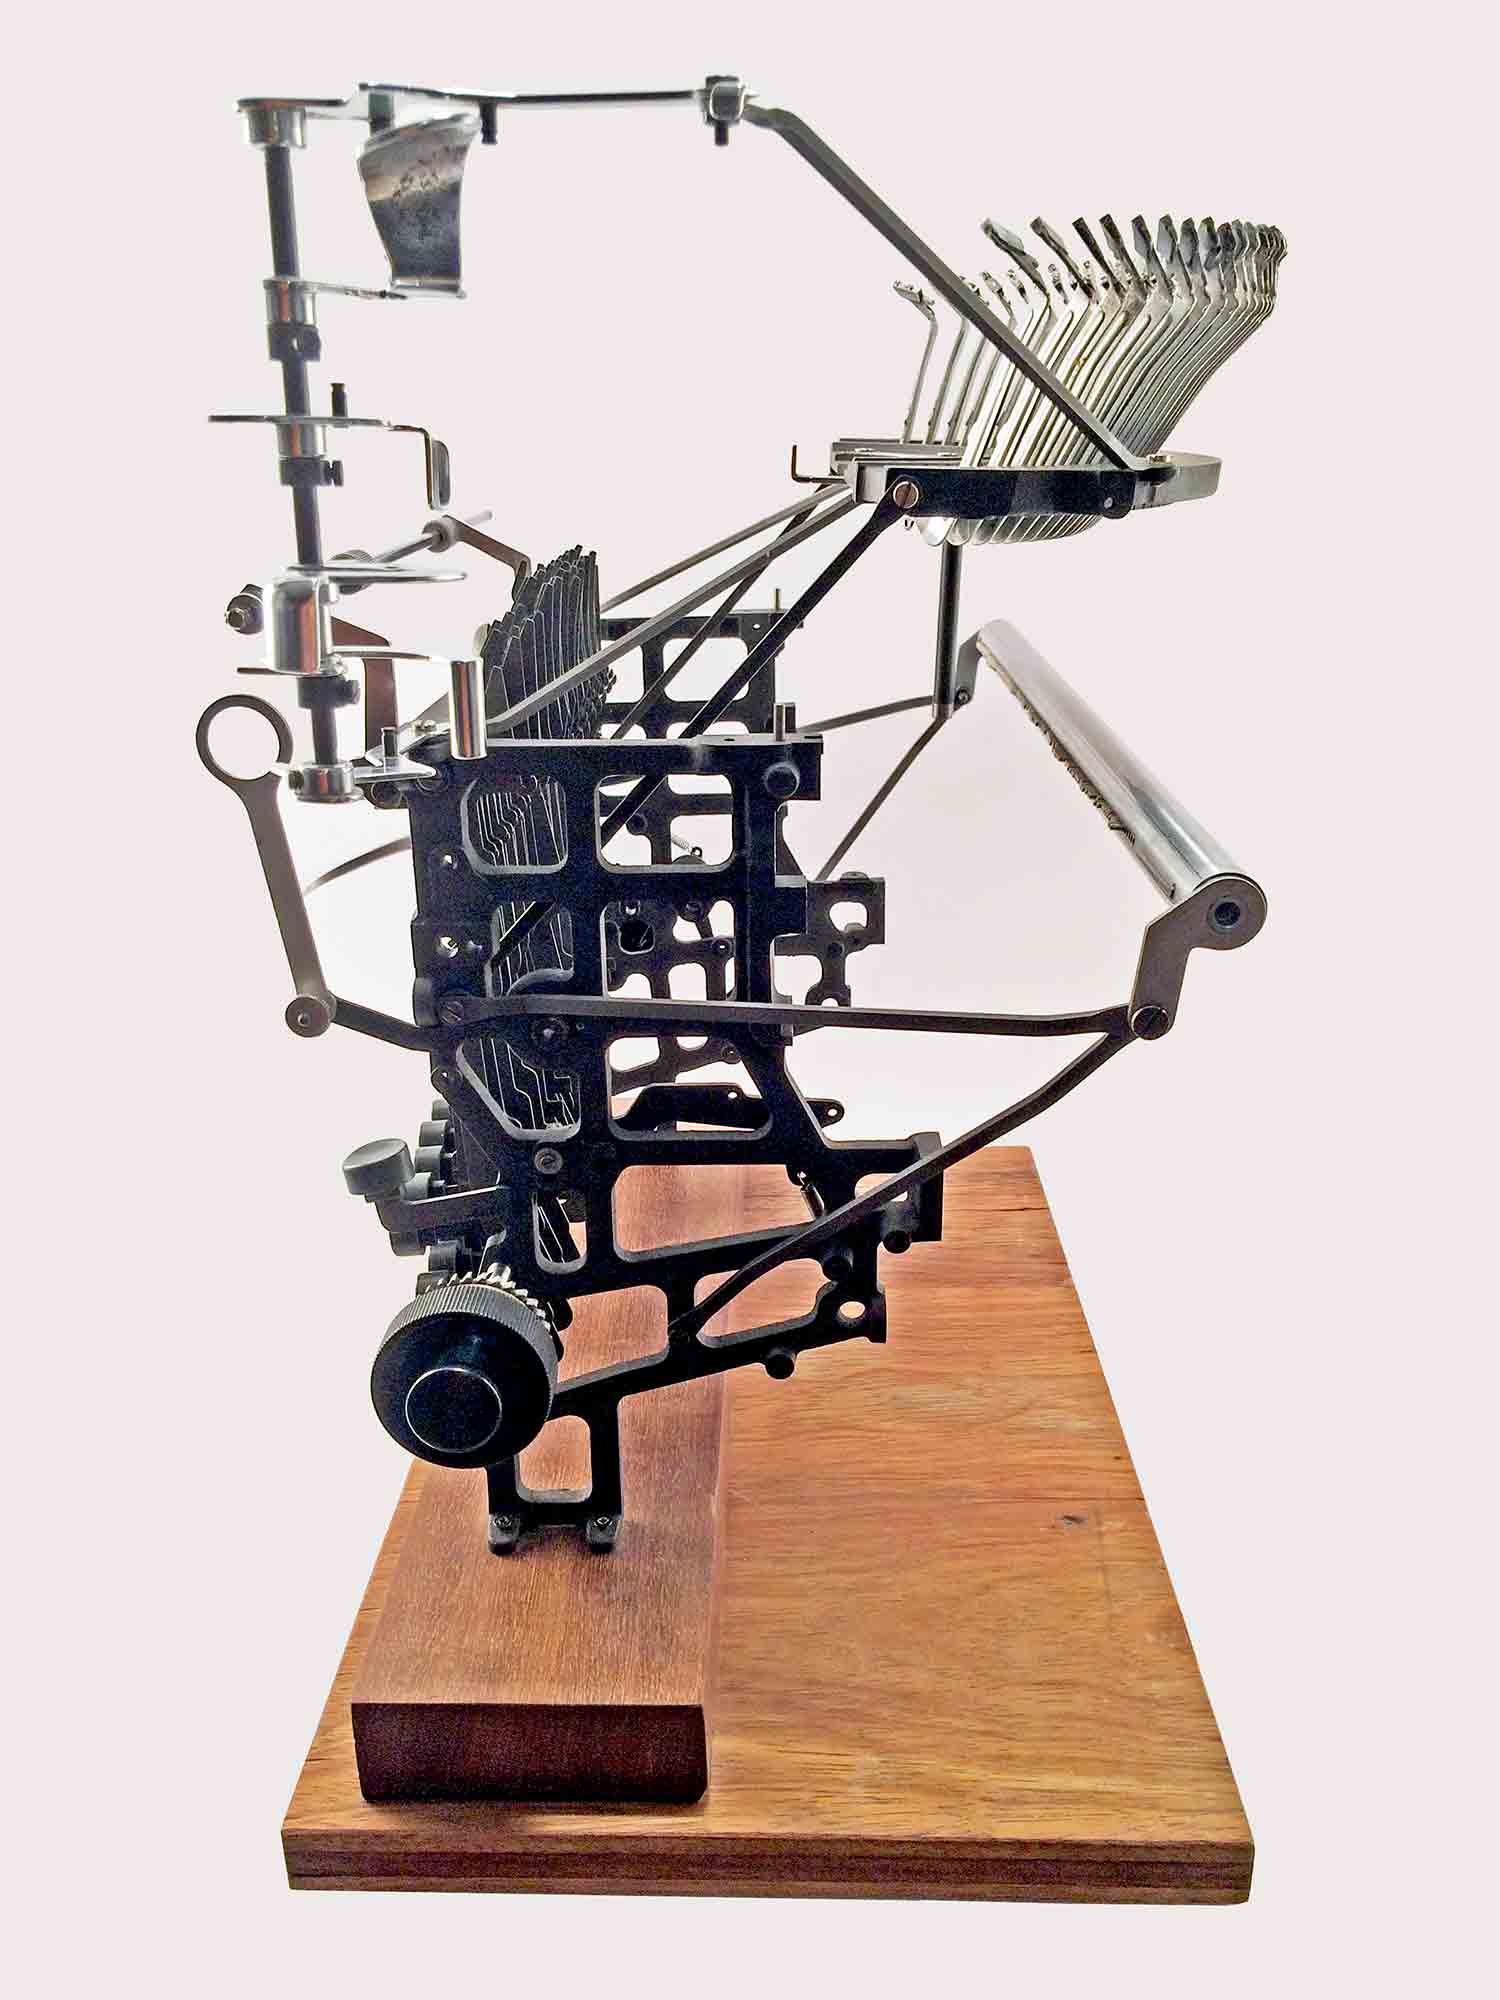 Escultura d'una interpretació d’una màquina d’escriure Olivetti Lexicon 80